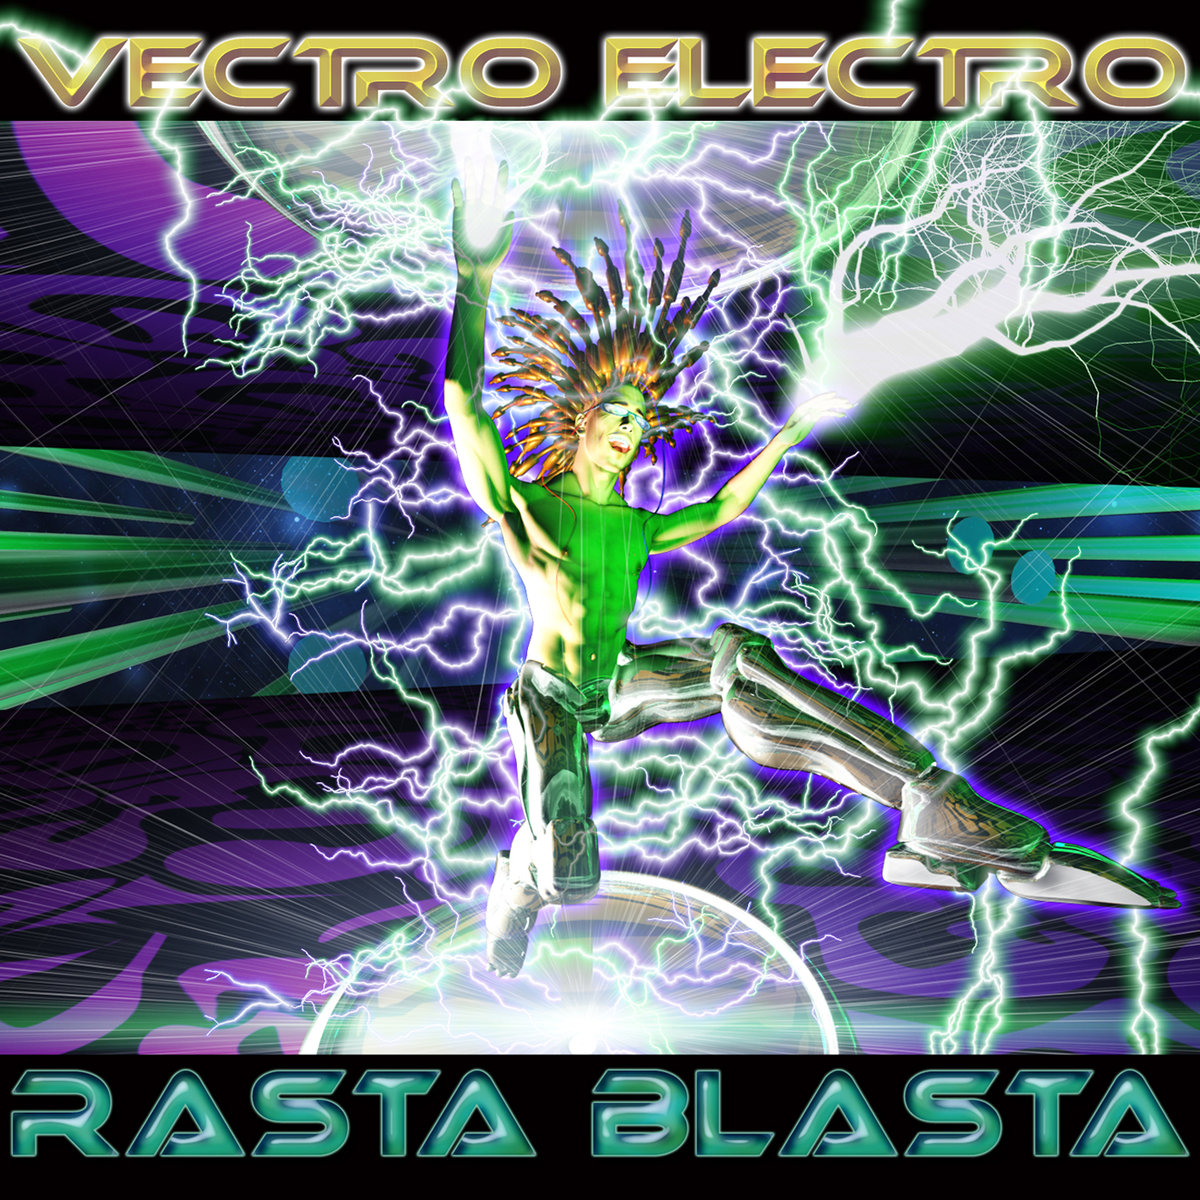 Vectro Electro - Rasta Blasta @ 'Rasta Blasta' album (electronic, goa)